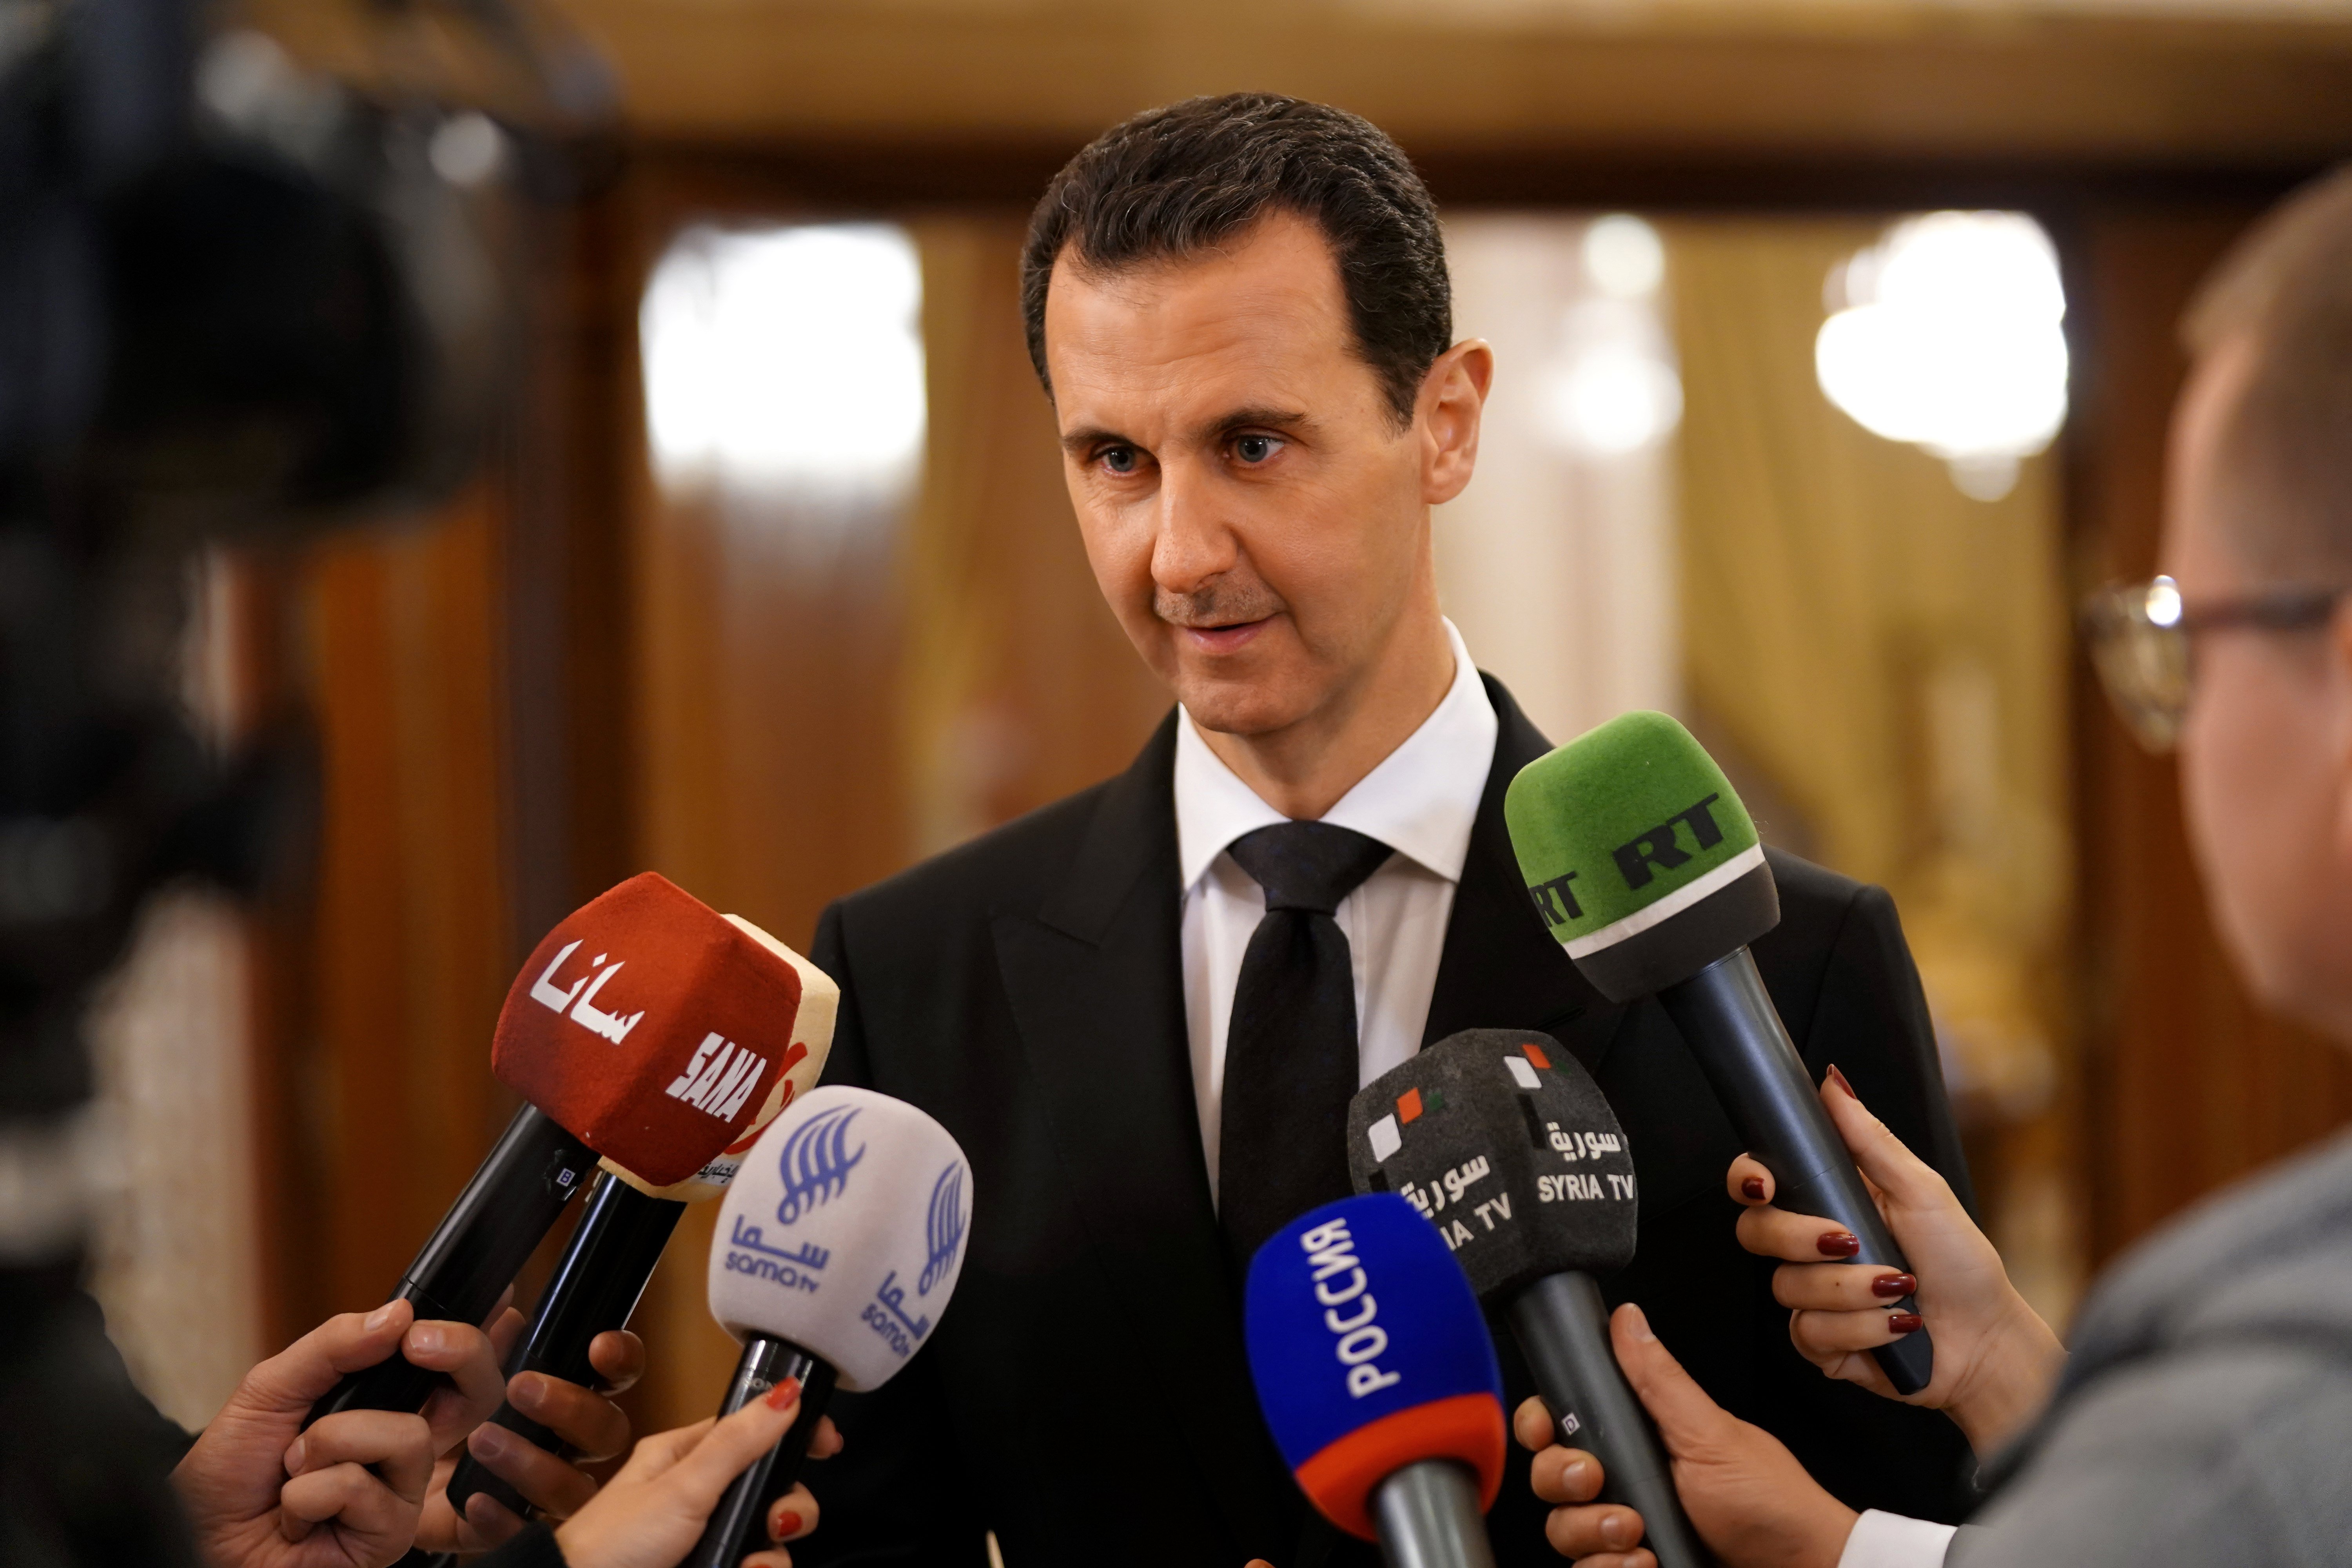 Presidente sírio diz estar mais determinado na luta contra terrorismo no país